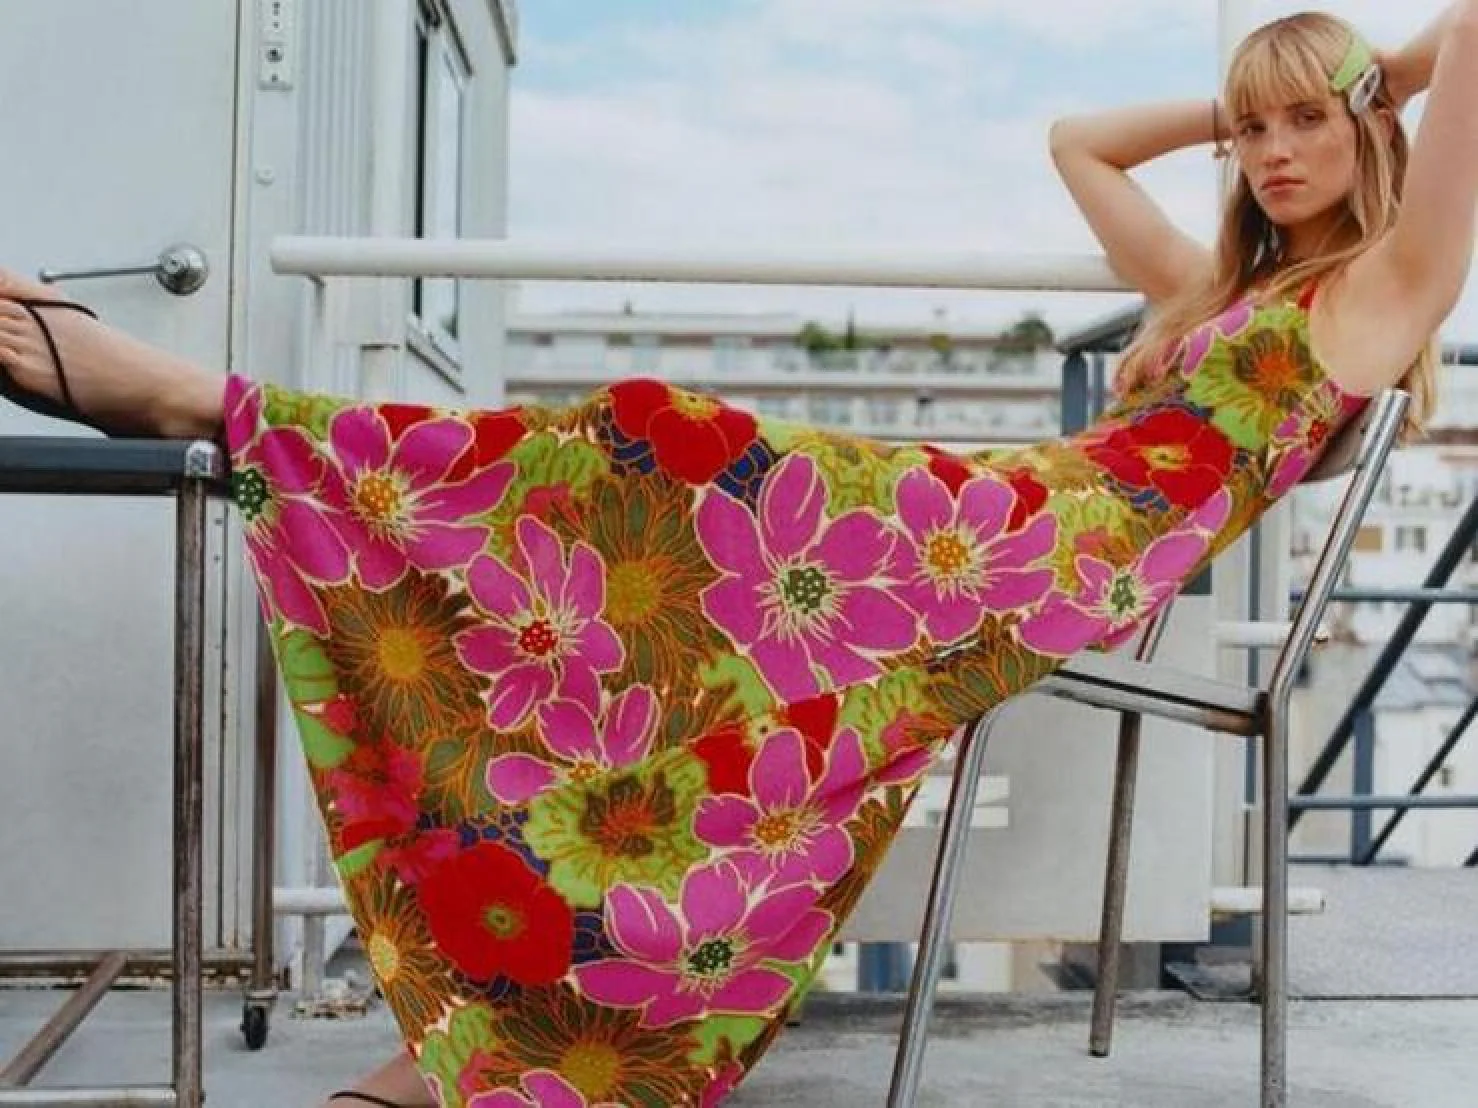 acortar Botánico tos Fotos: Los vestidos arrasan este verano, y estos 13 largos de Zara son  súper cómodos y hacen tipazo | Mujer Hoy